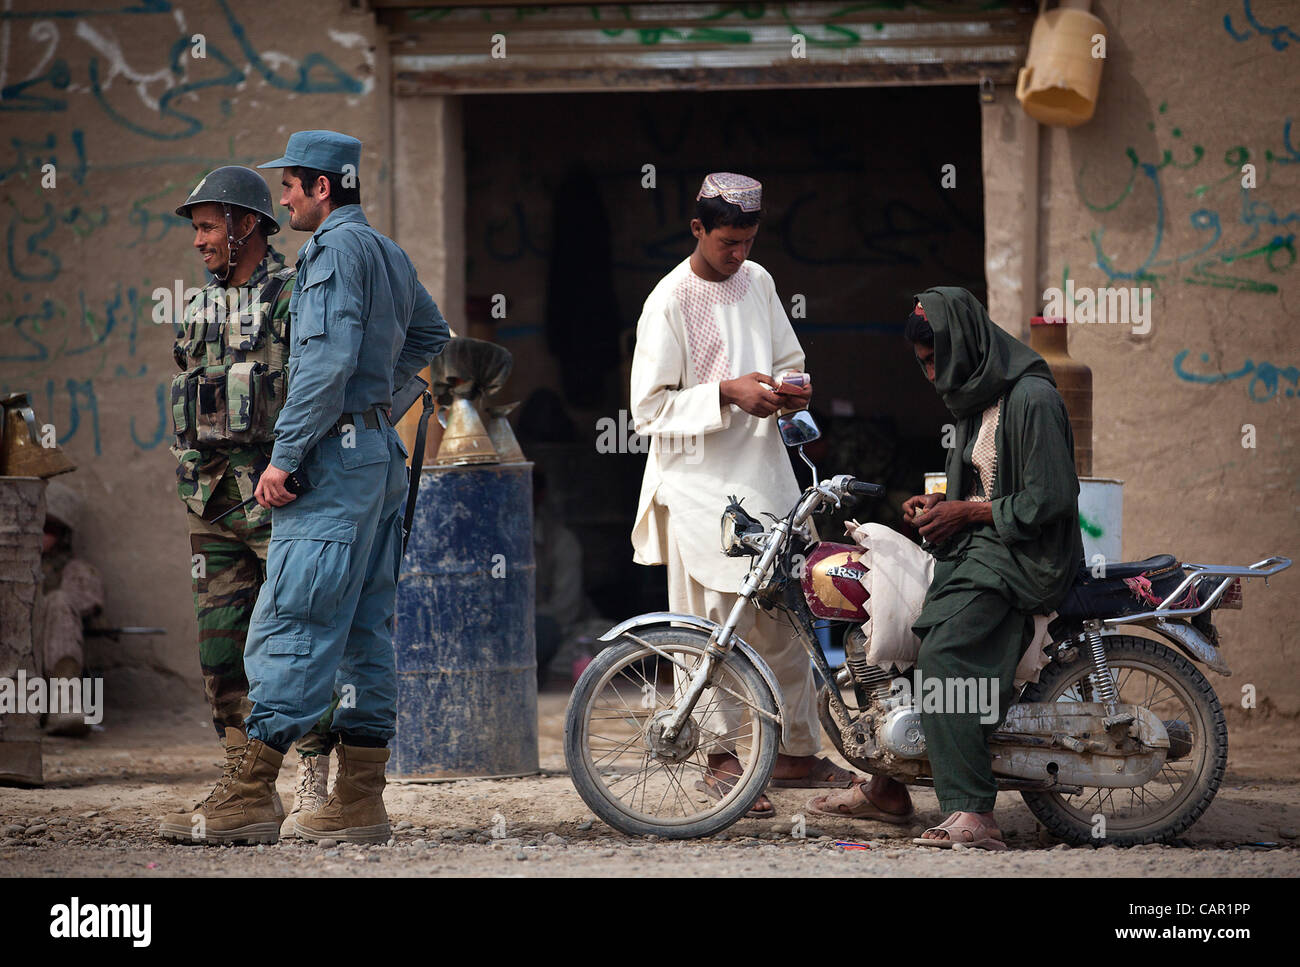 Polizia nazionale afgana Lt. Naib (secondo da sinistra) interagisce con un esercito nazionale afghano soldato al di fuori di un negozio di carburante nel Hazar Joft Bazaar mentre manning un veicolo checkpoint qui, 10 aprile 2012. Foto Stock